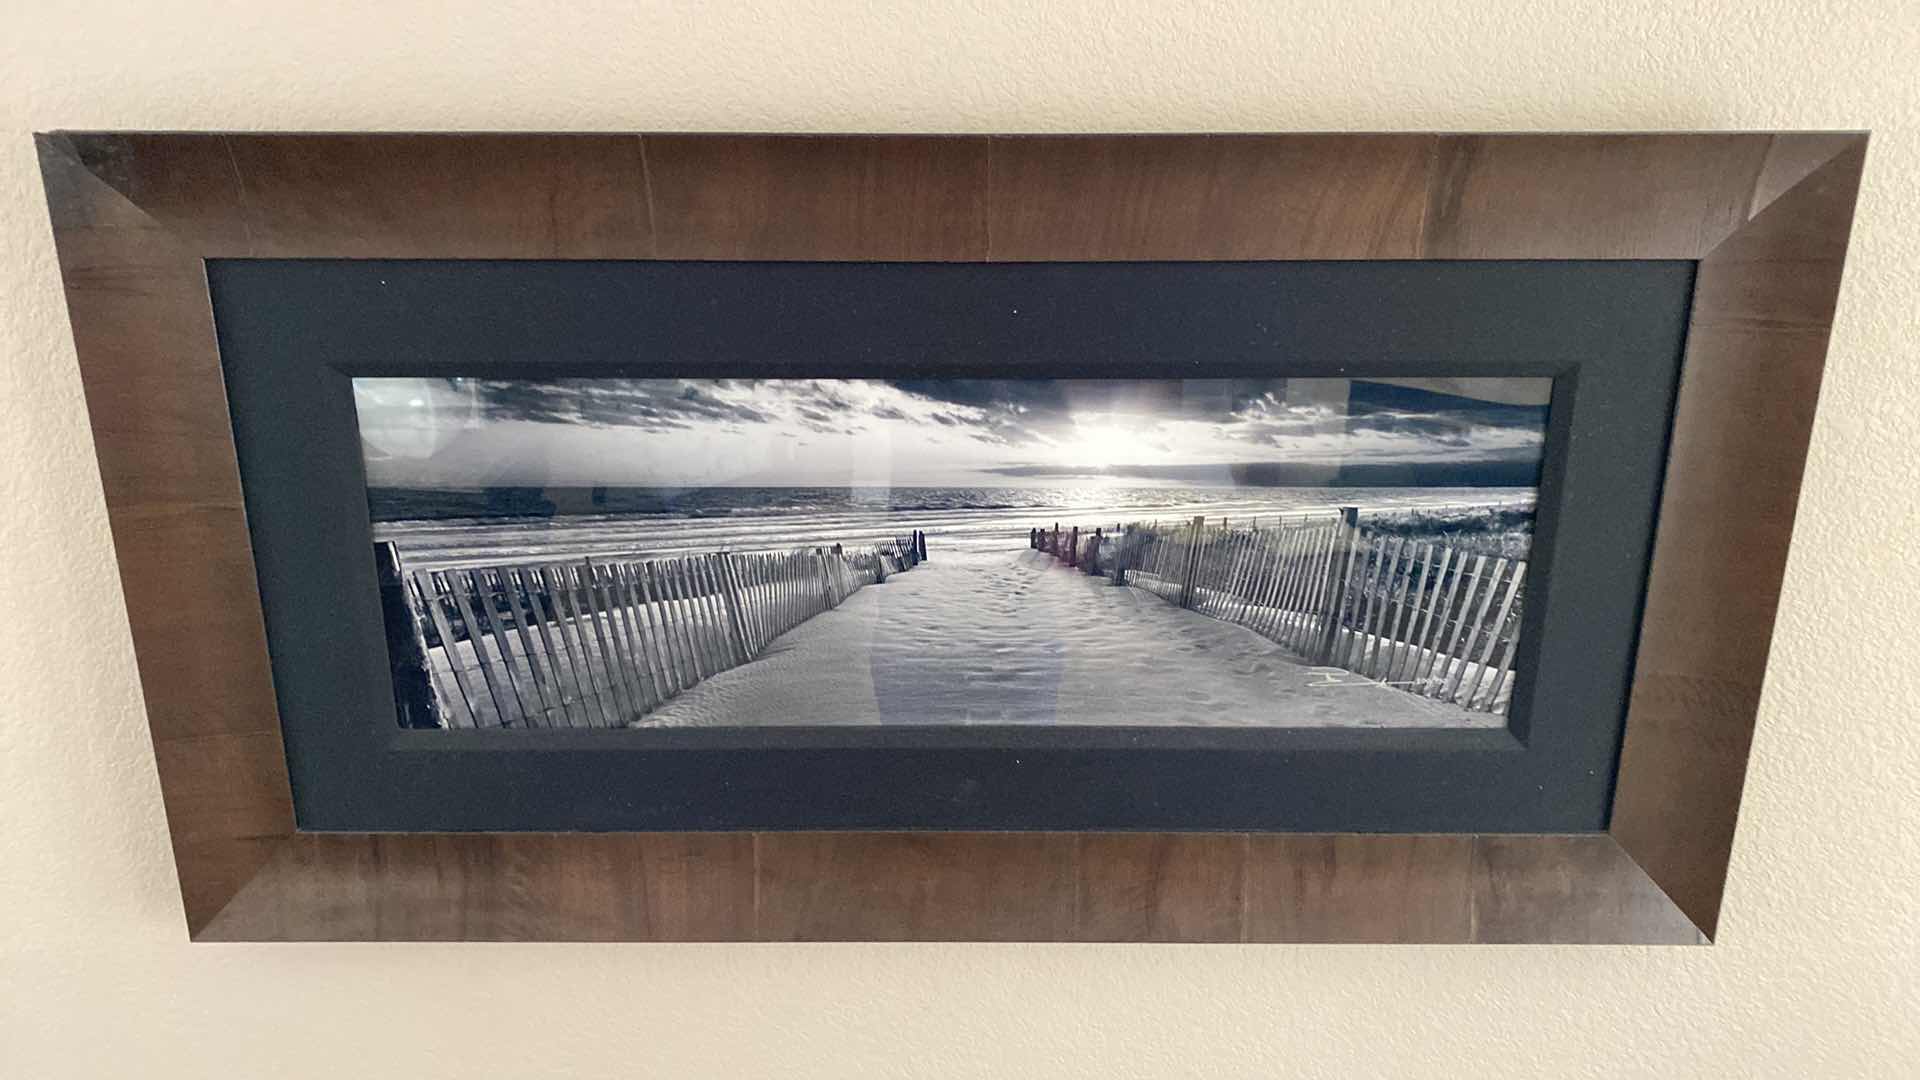 Photo 5 of GALLERY FRAMED SIGNED PETER LIK BLACK/WHITE BEACH SCENE 200/950 ARTWORK 56” x 29” including frame, coa not available